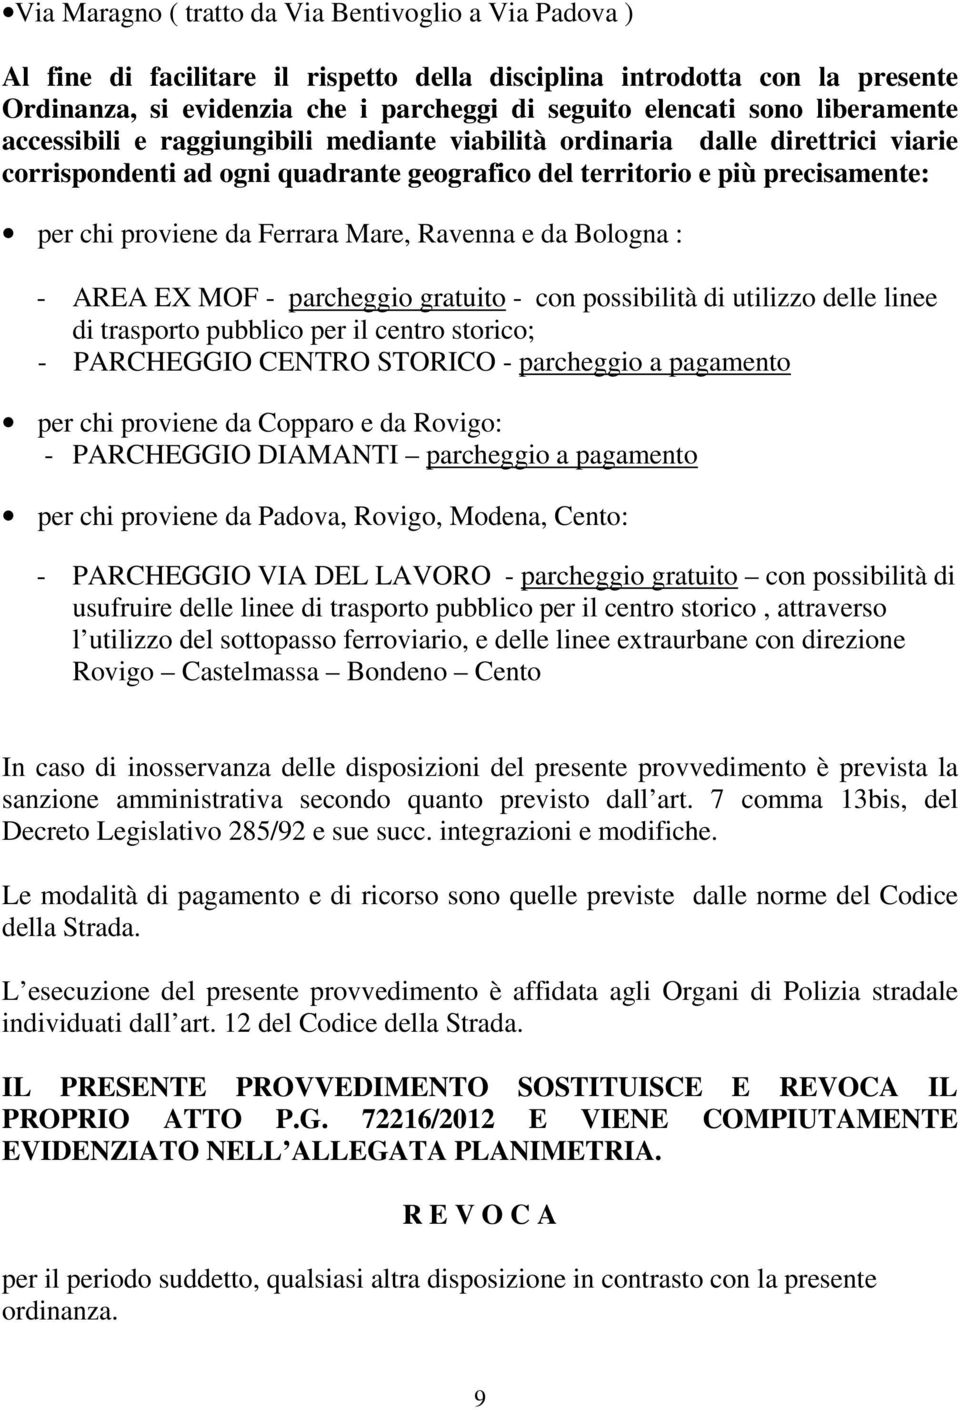 Mare, Ravenna e da Bologna : - AREA EX MOF - parcheggio gratuito - con possibilità di utilizzo delle linee di trasporto pubblico per il centro storico; - PARCHEGGIO CENTRO STORICO - parcheggio a